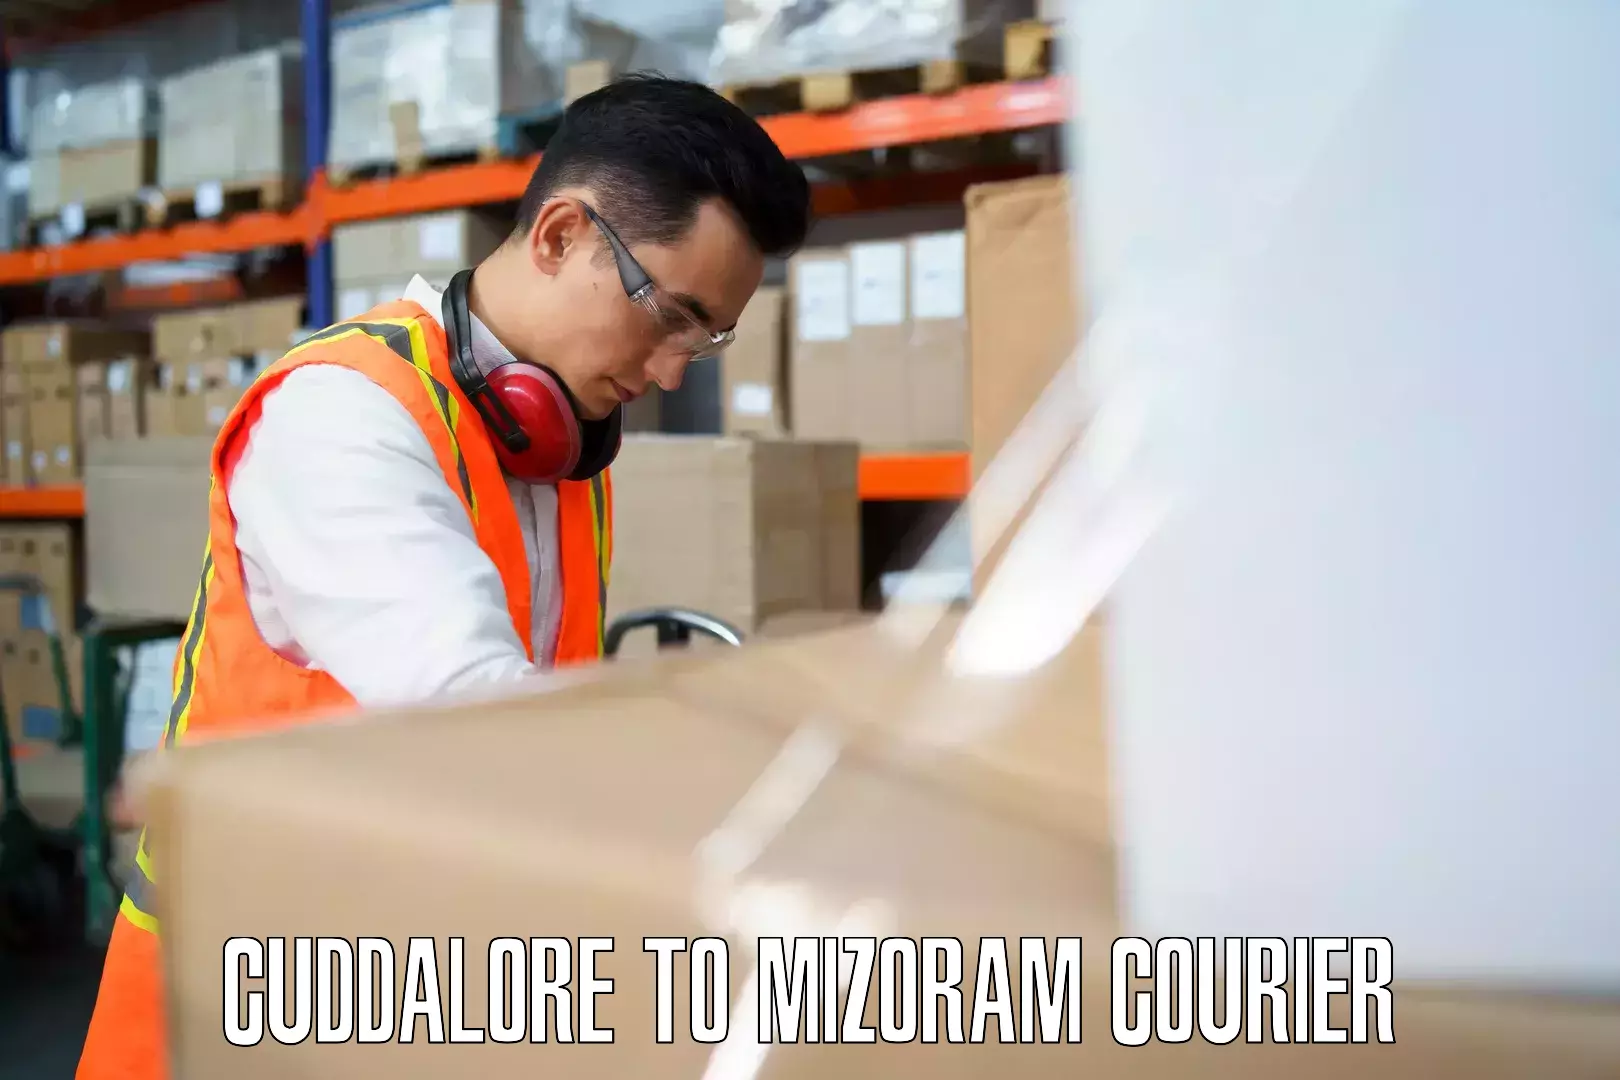 Luggage transfer service Cuddalore to Mizoram